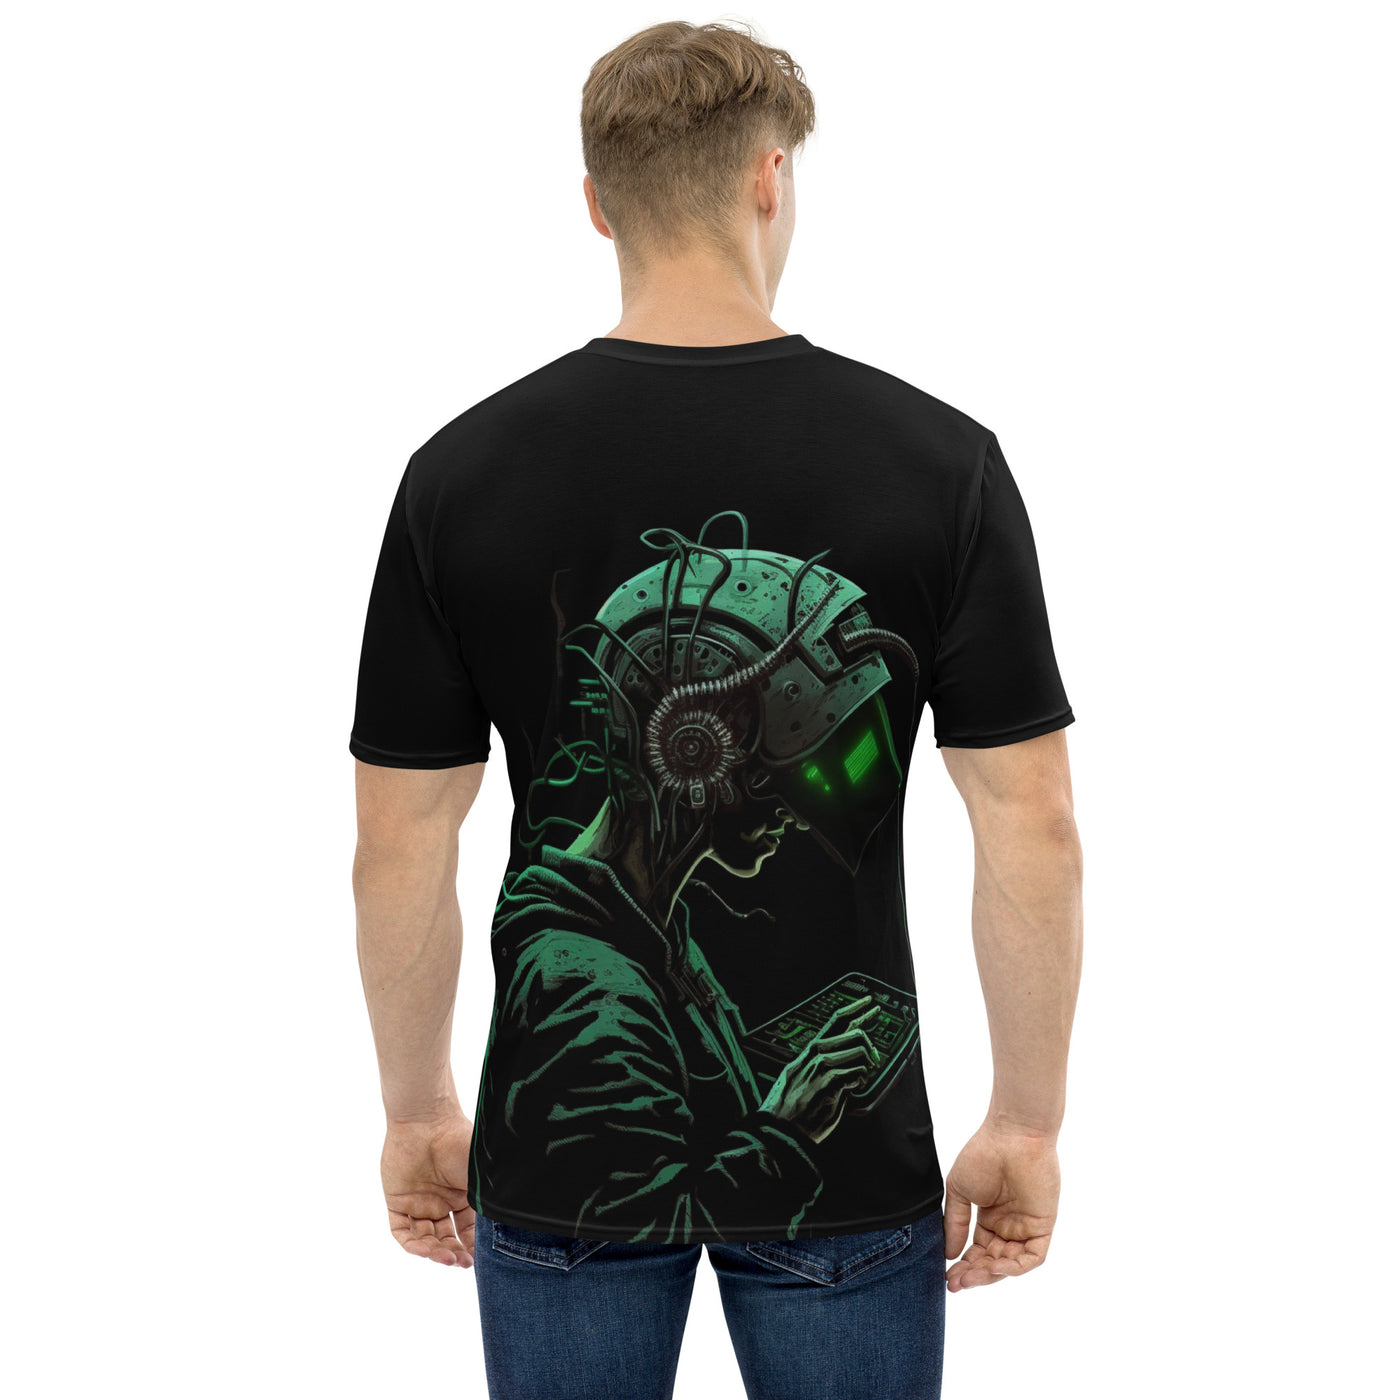 Cyberware assassin v8 - Men's t-shirt ( Back Print )